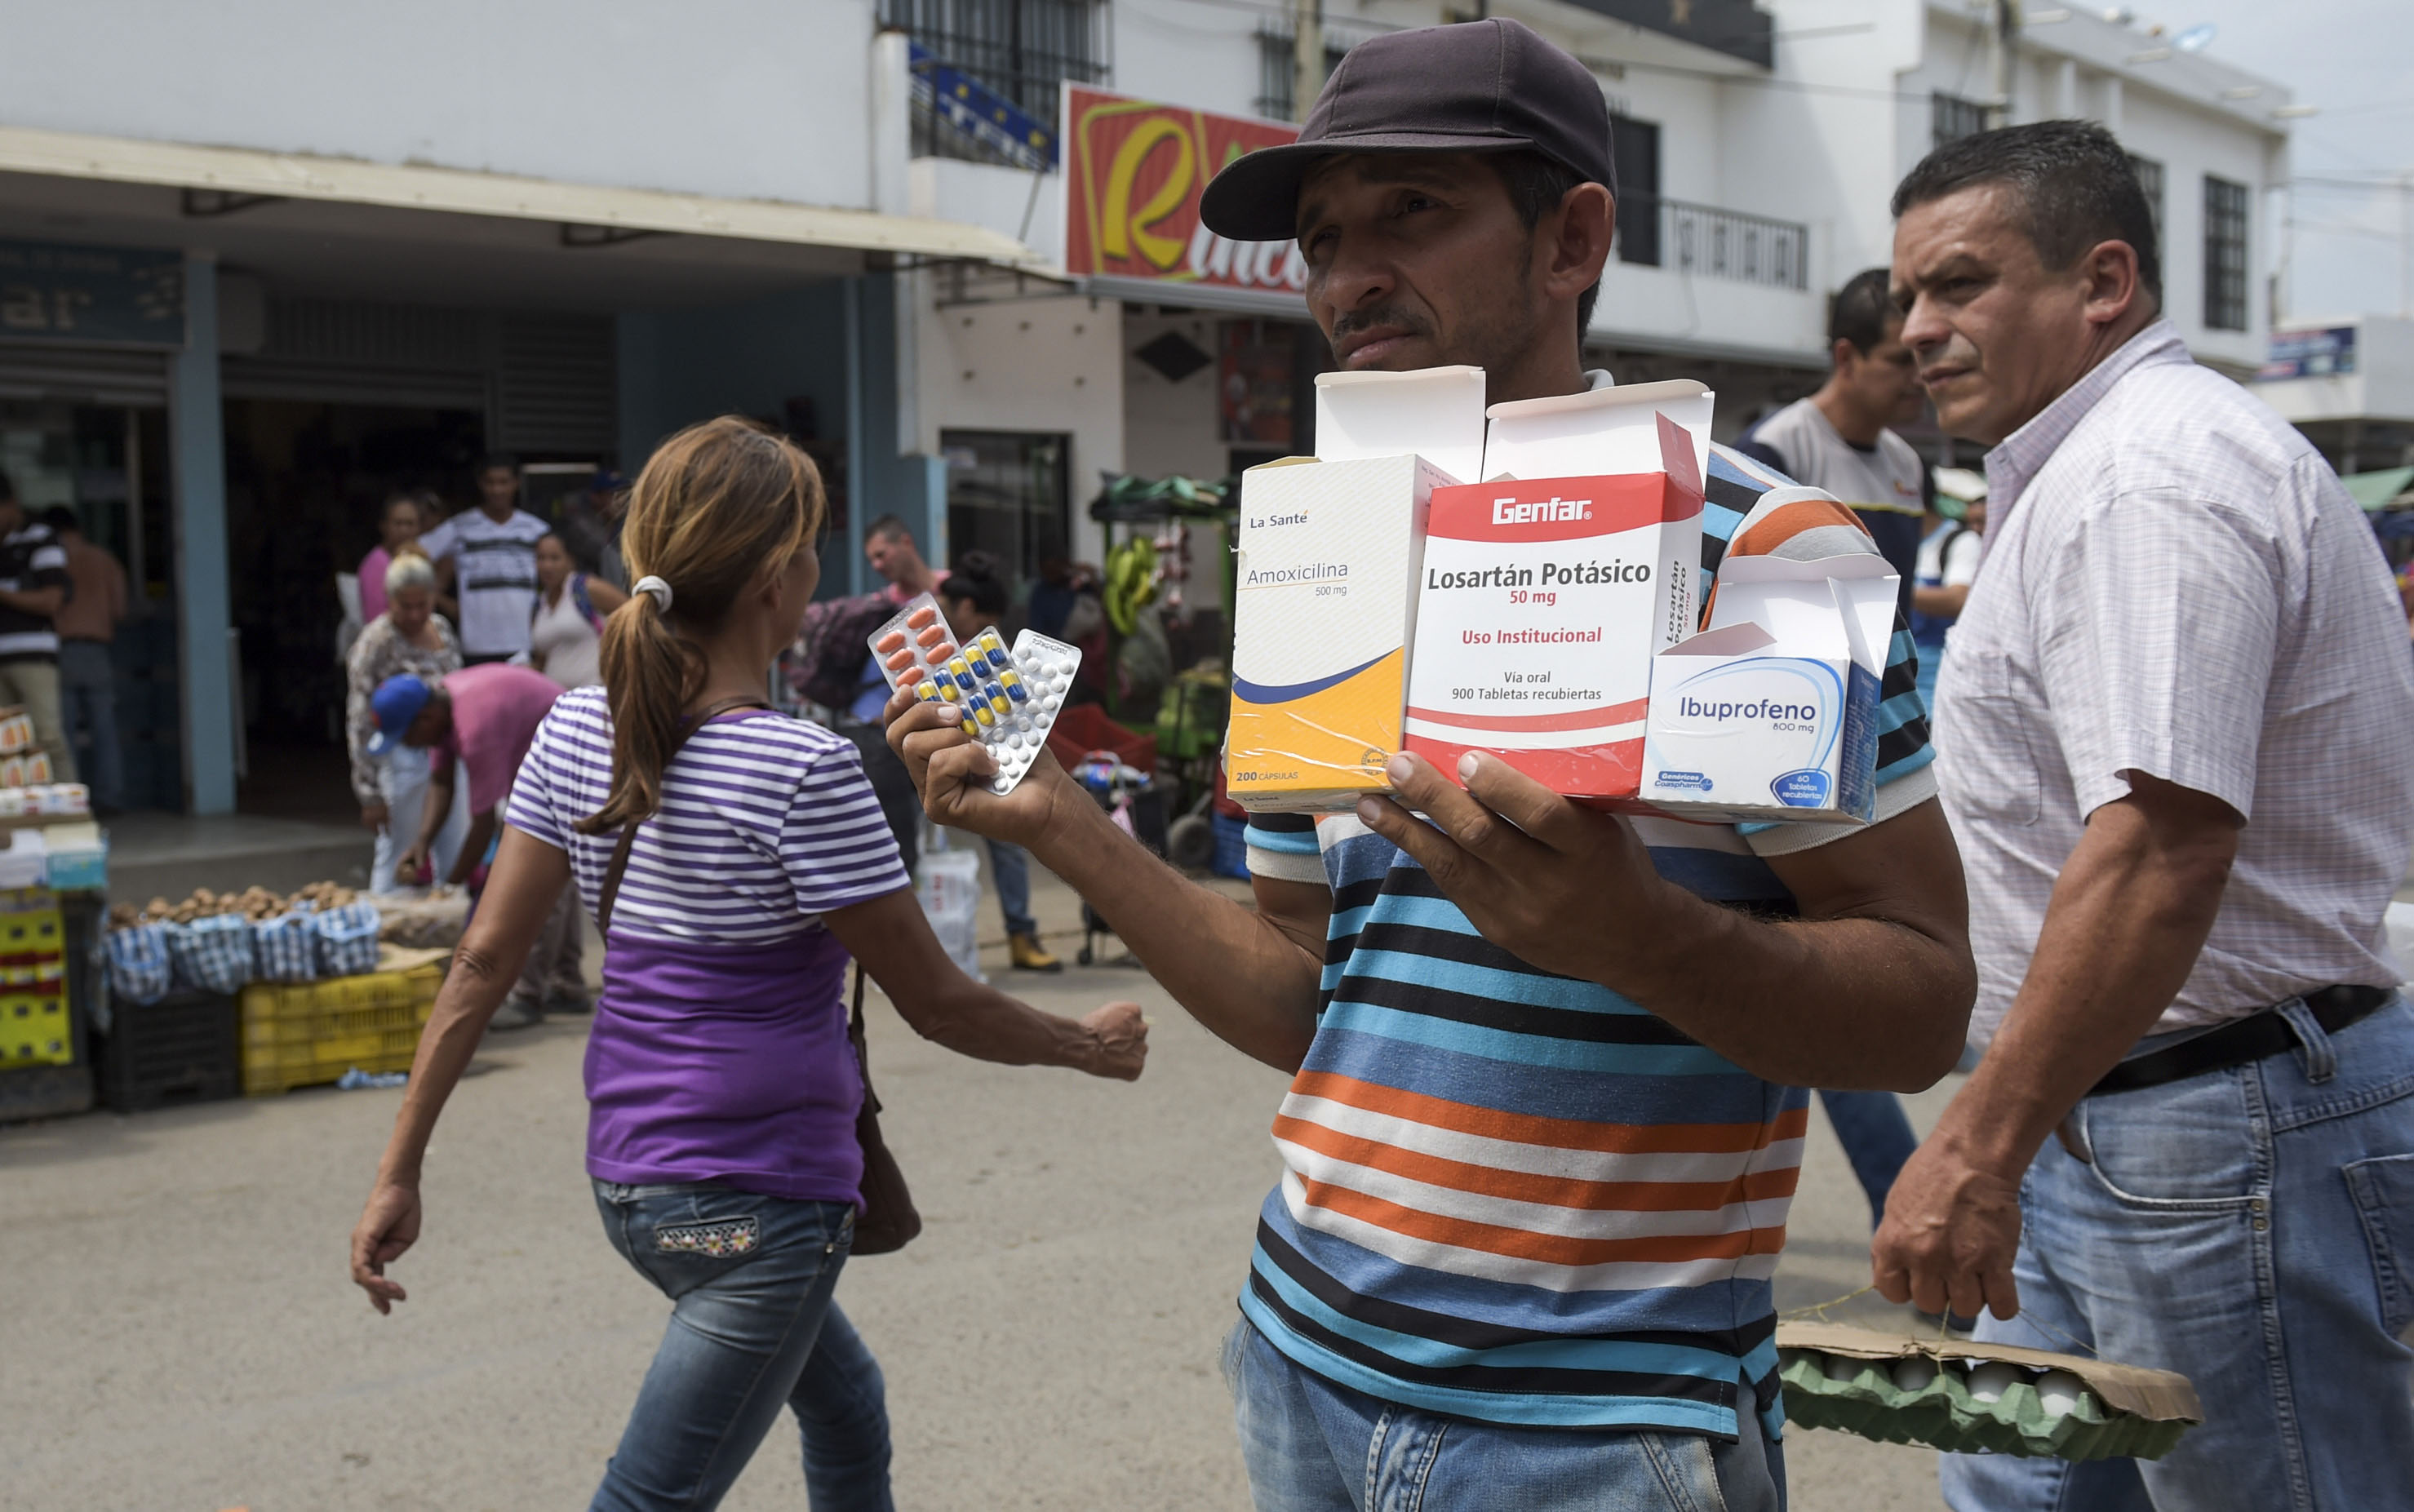 El comercio del dolor: Las farmacias callejeras en la frontera entre Colombia y Venezuela (Fotos)